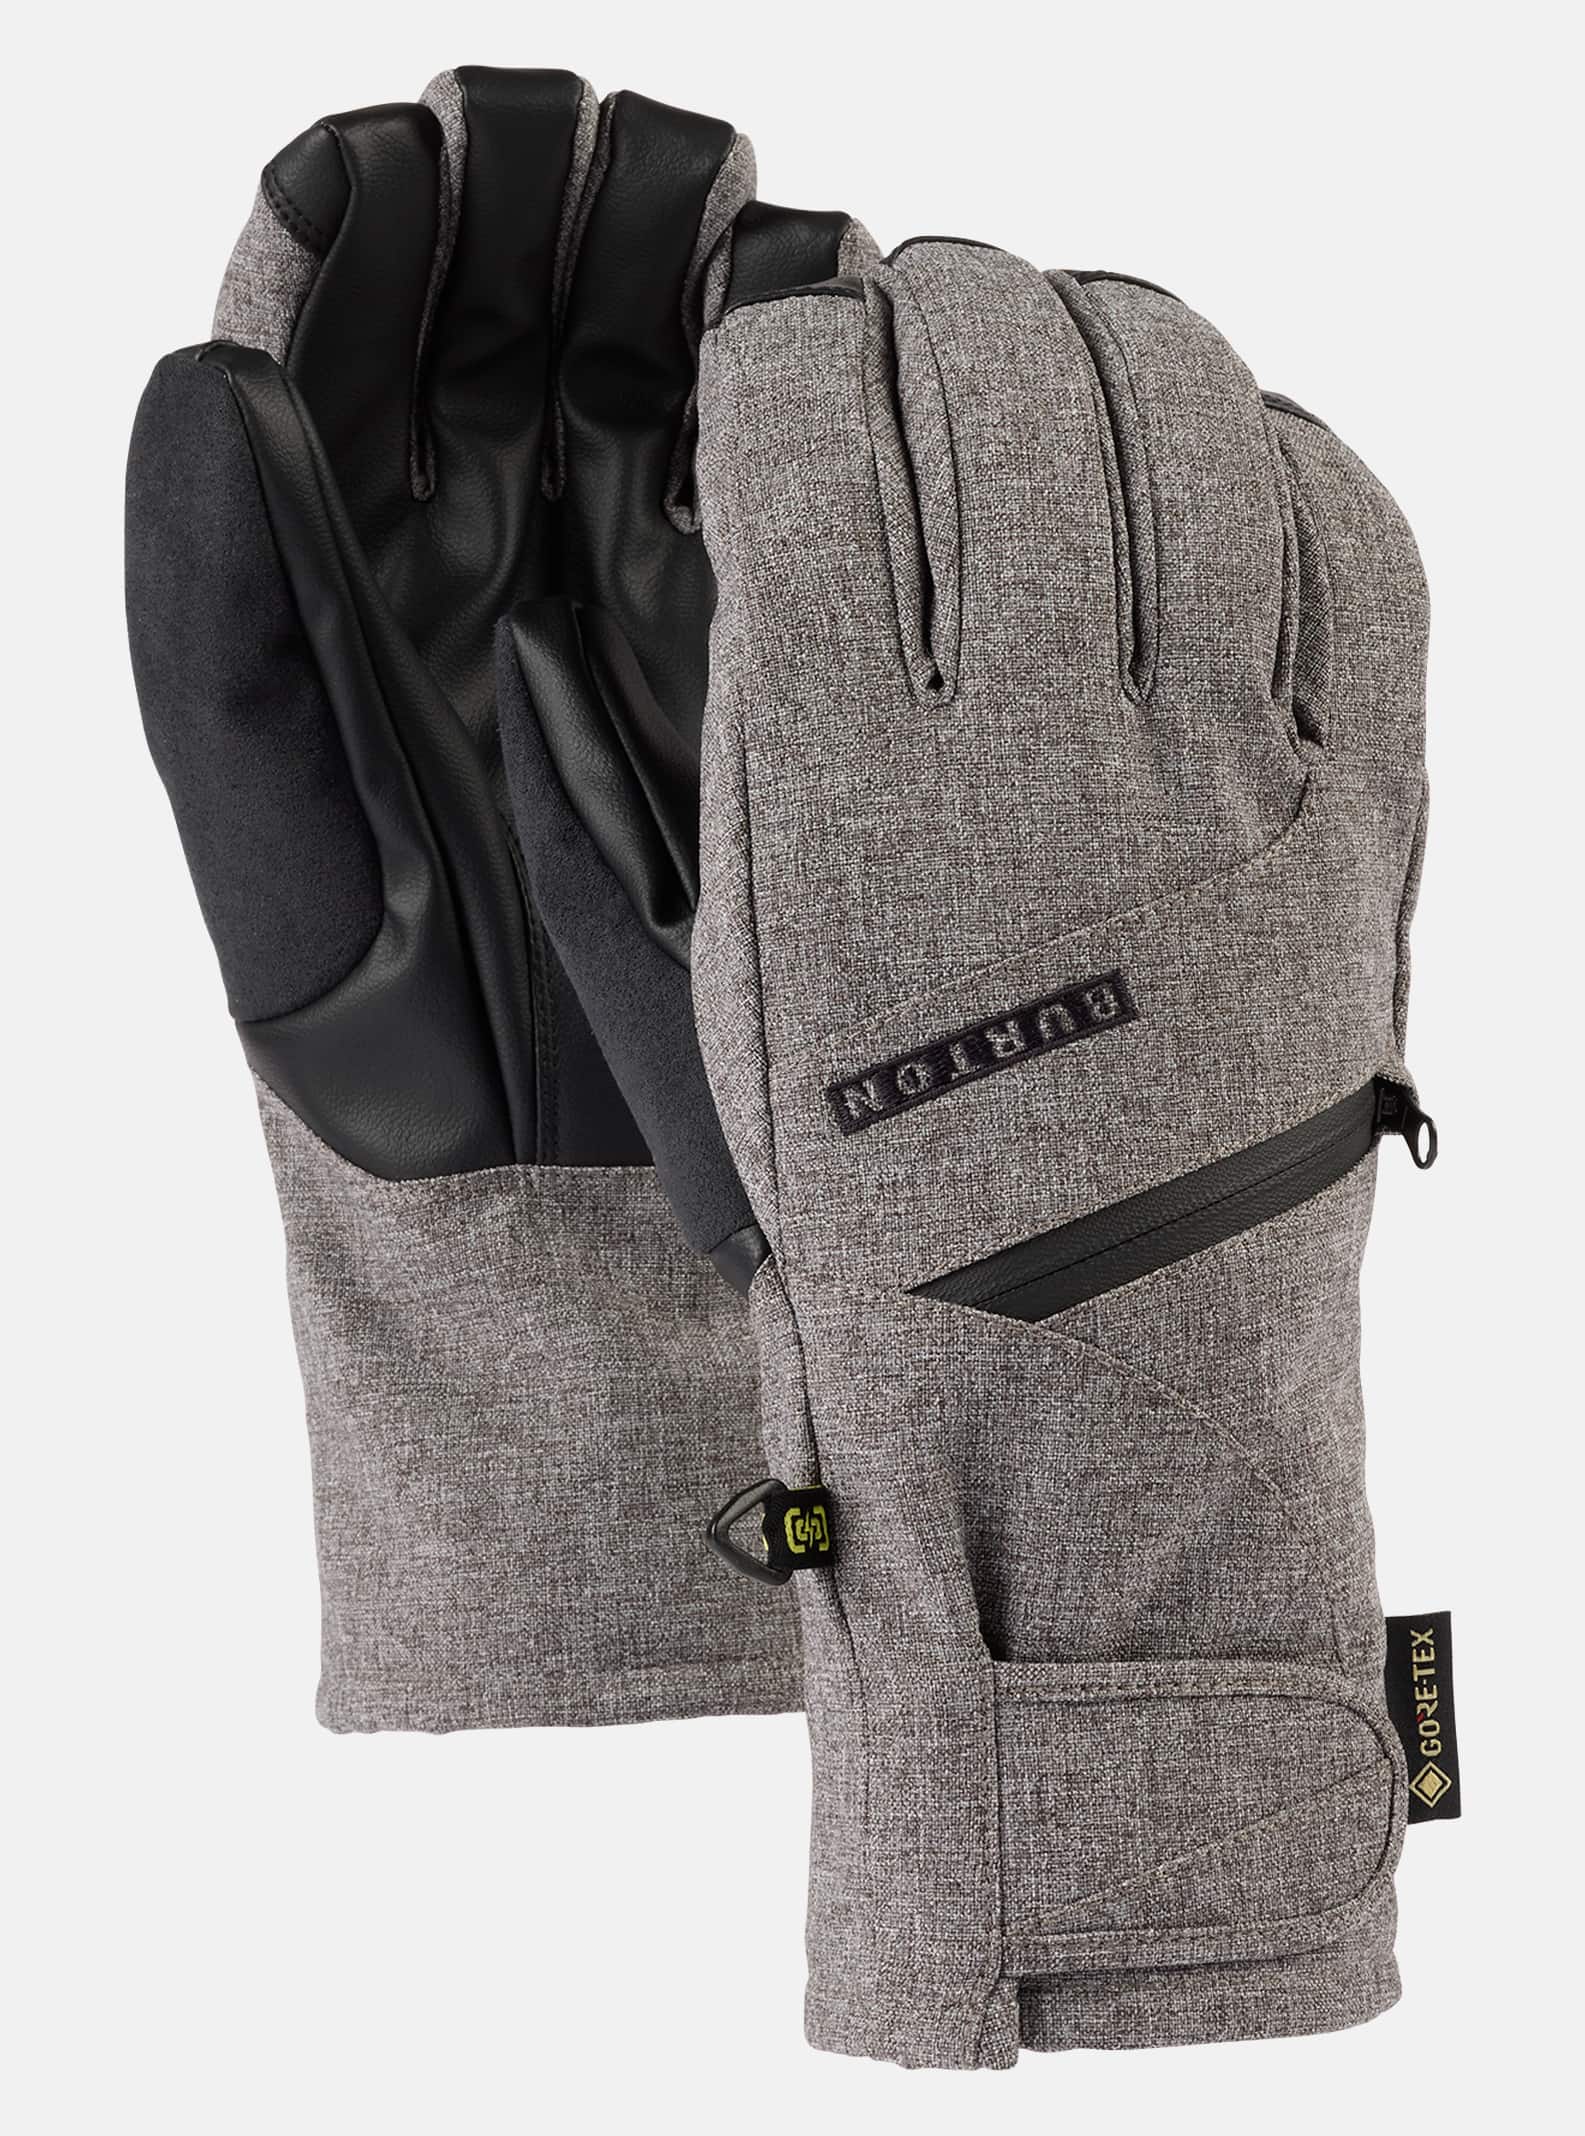 Women's GORE-TEX Under Gloves | Burton.com Winter 2023 US